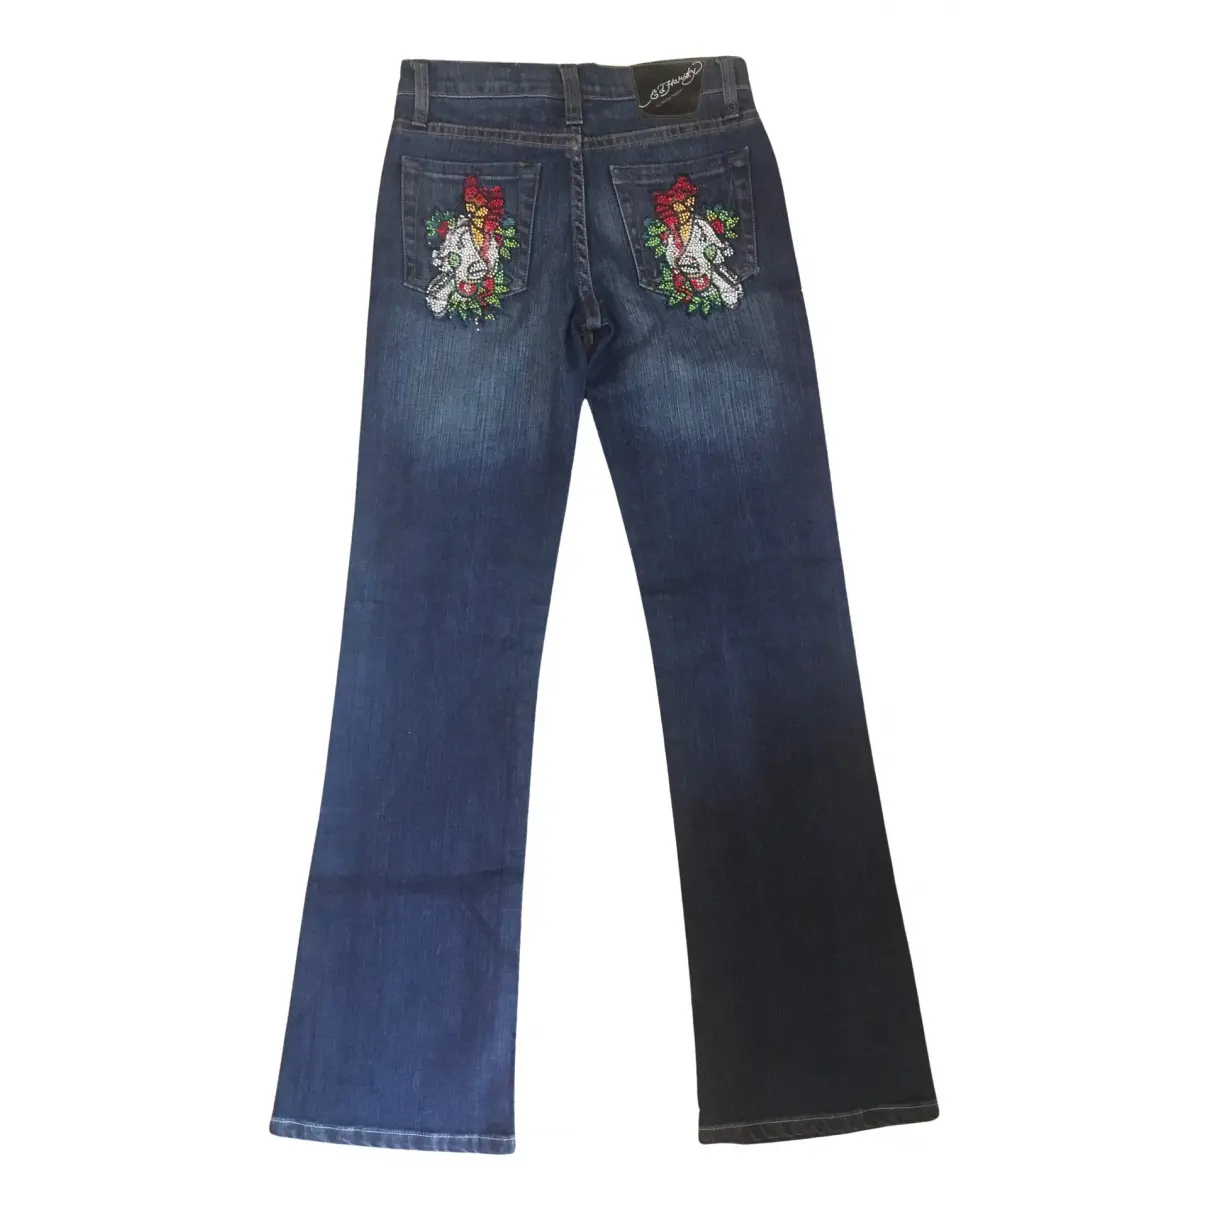 Buy ED HARDY Jeans online